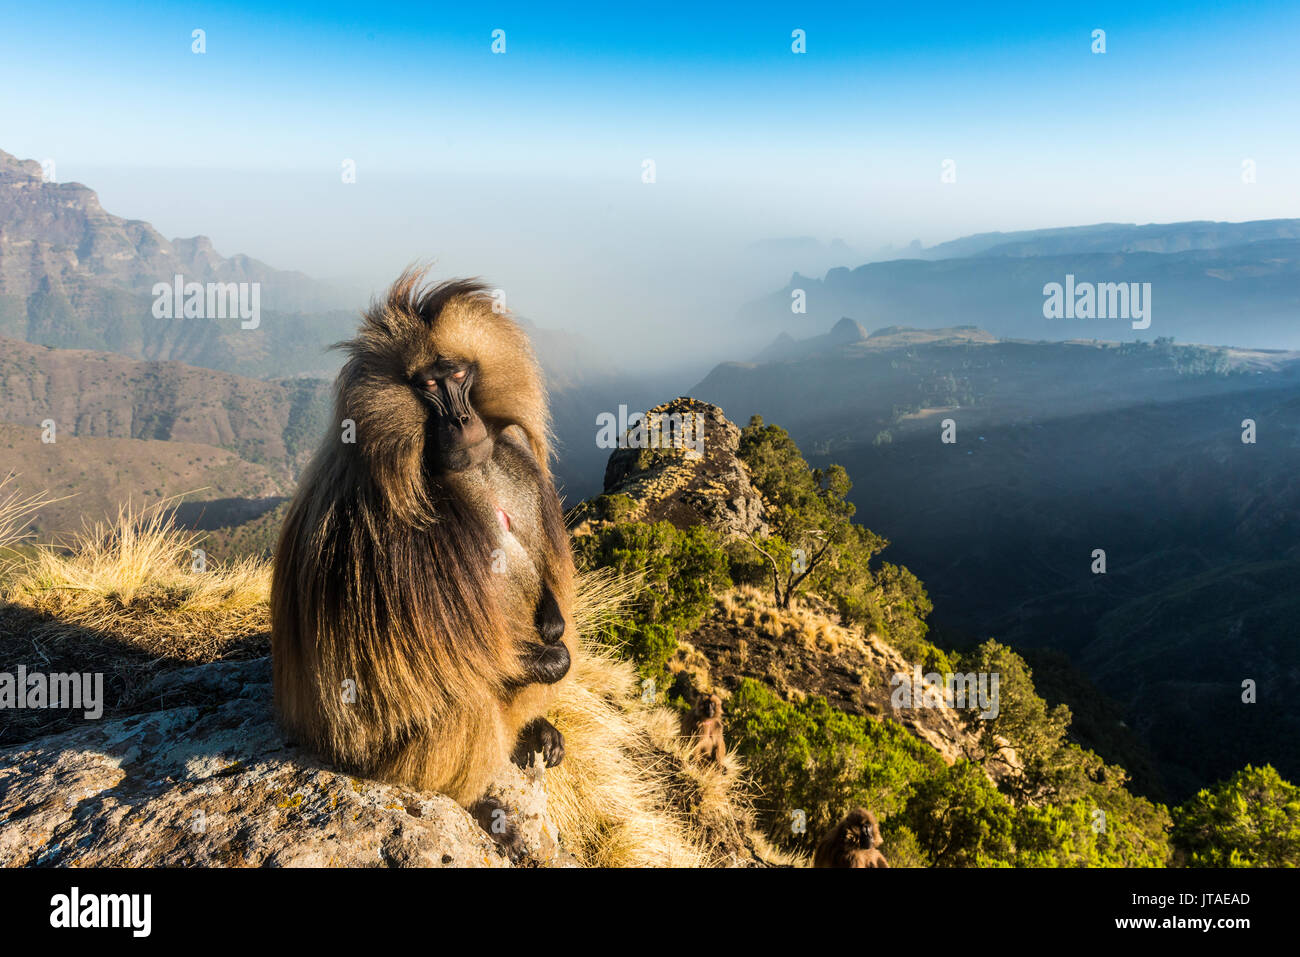 Gélada (Theropithecus gelada mâle) assis sur une falaise, le parc national des montagnes du Simien, Site du patrimoine mondial de l'UNESCO, l'Éthiopie, l'Afrique Banque D'Images